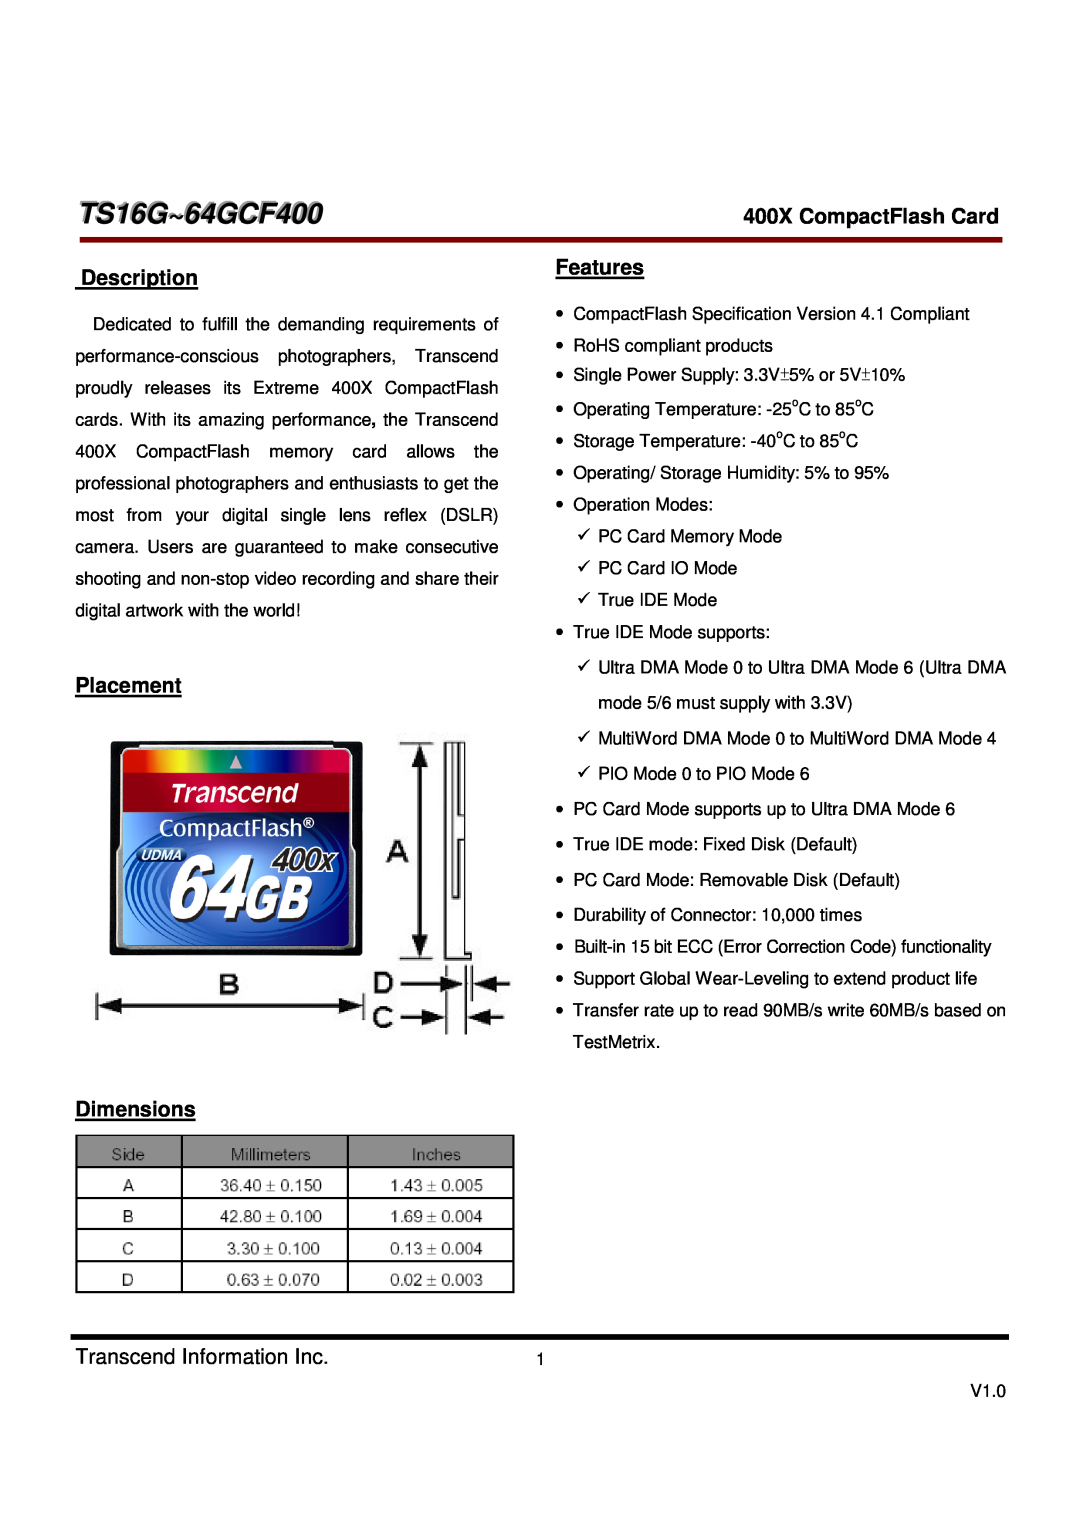 Transcend Information dimensions TS16G~64GCF400, Description, Placement, Features, Dimensions, 400X CompactFlash Card 